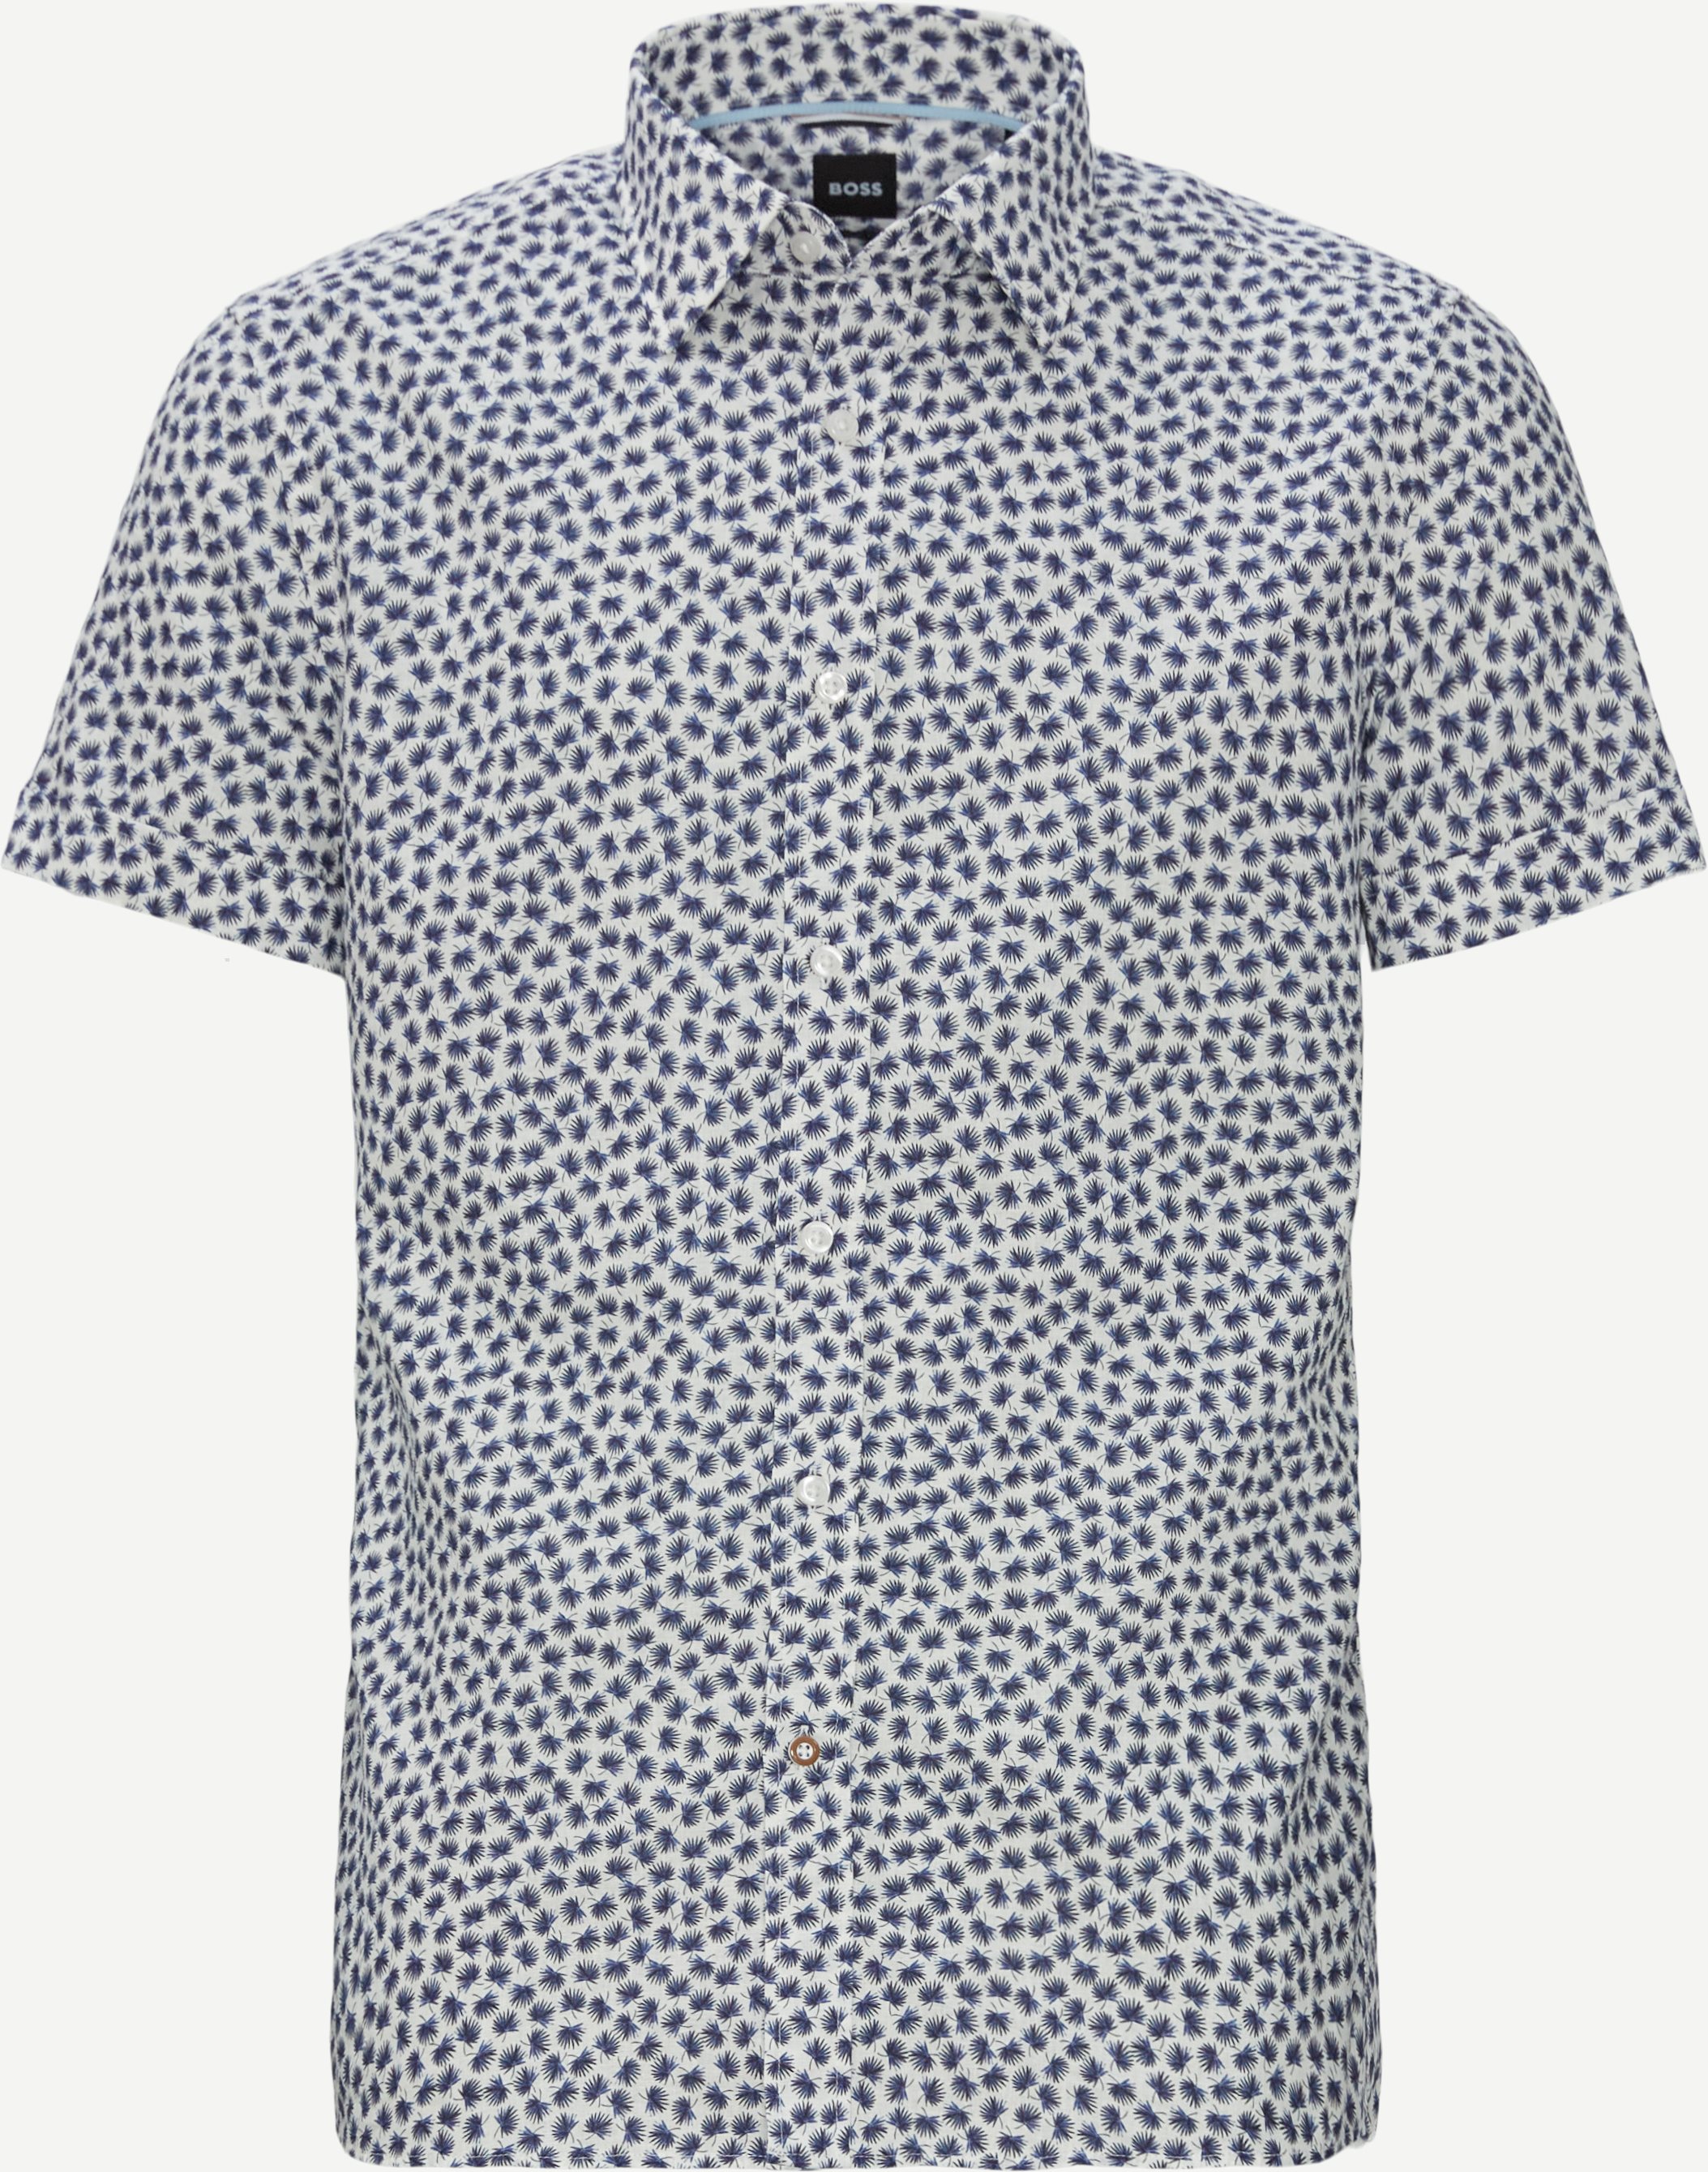 Kortärmade skjortor - Custom fit - Blå